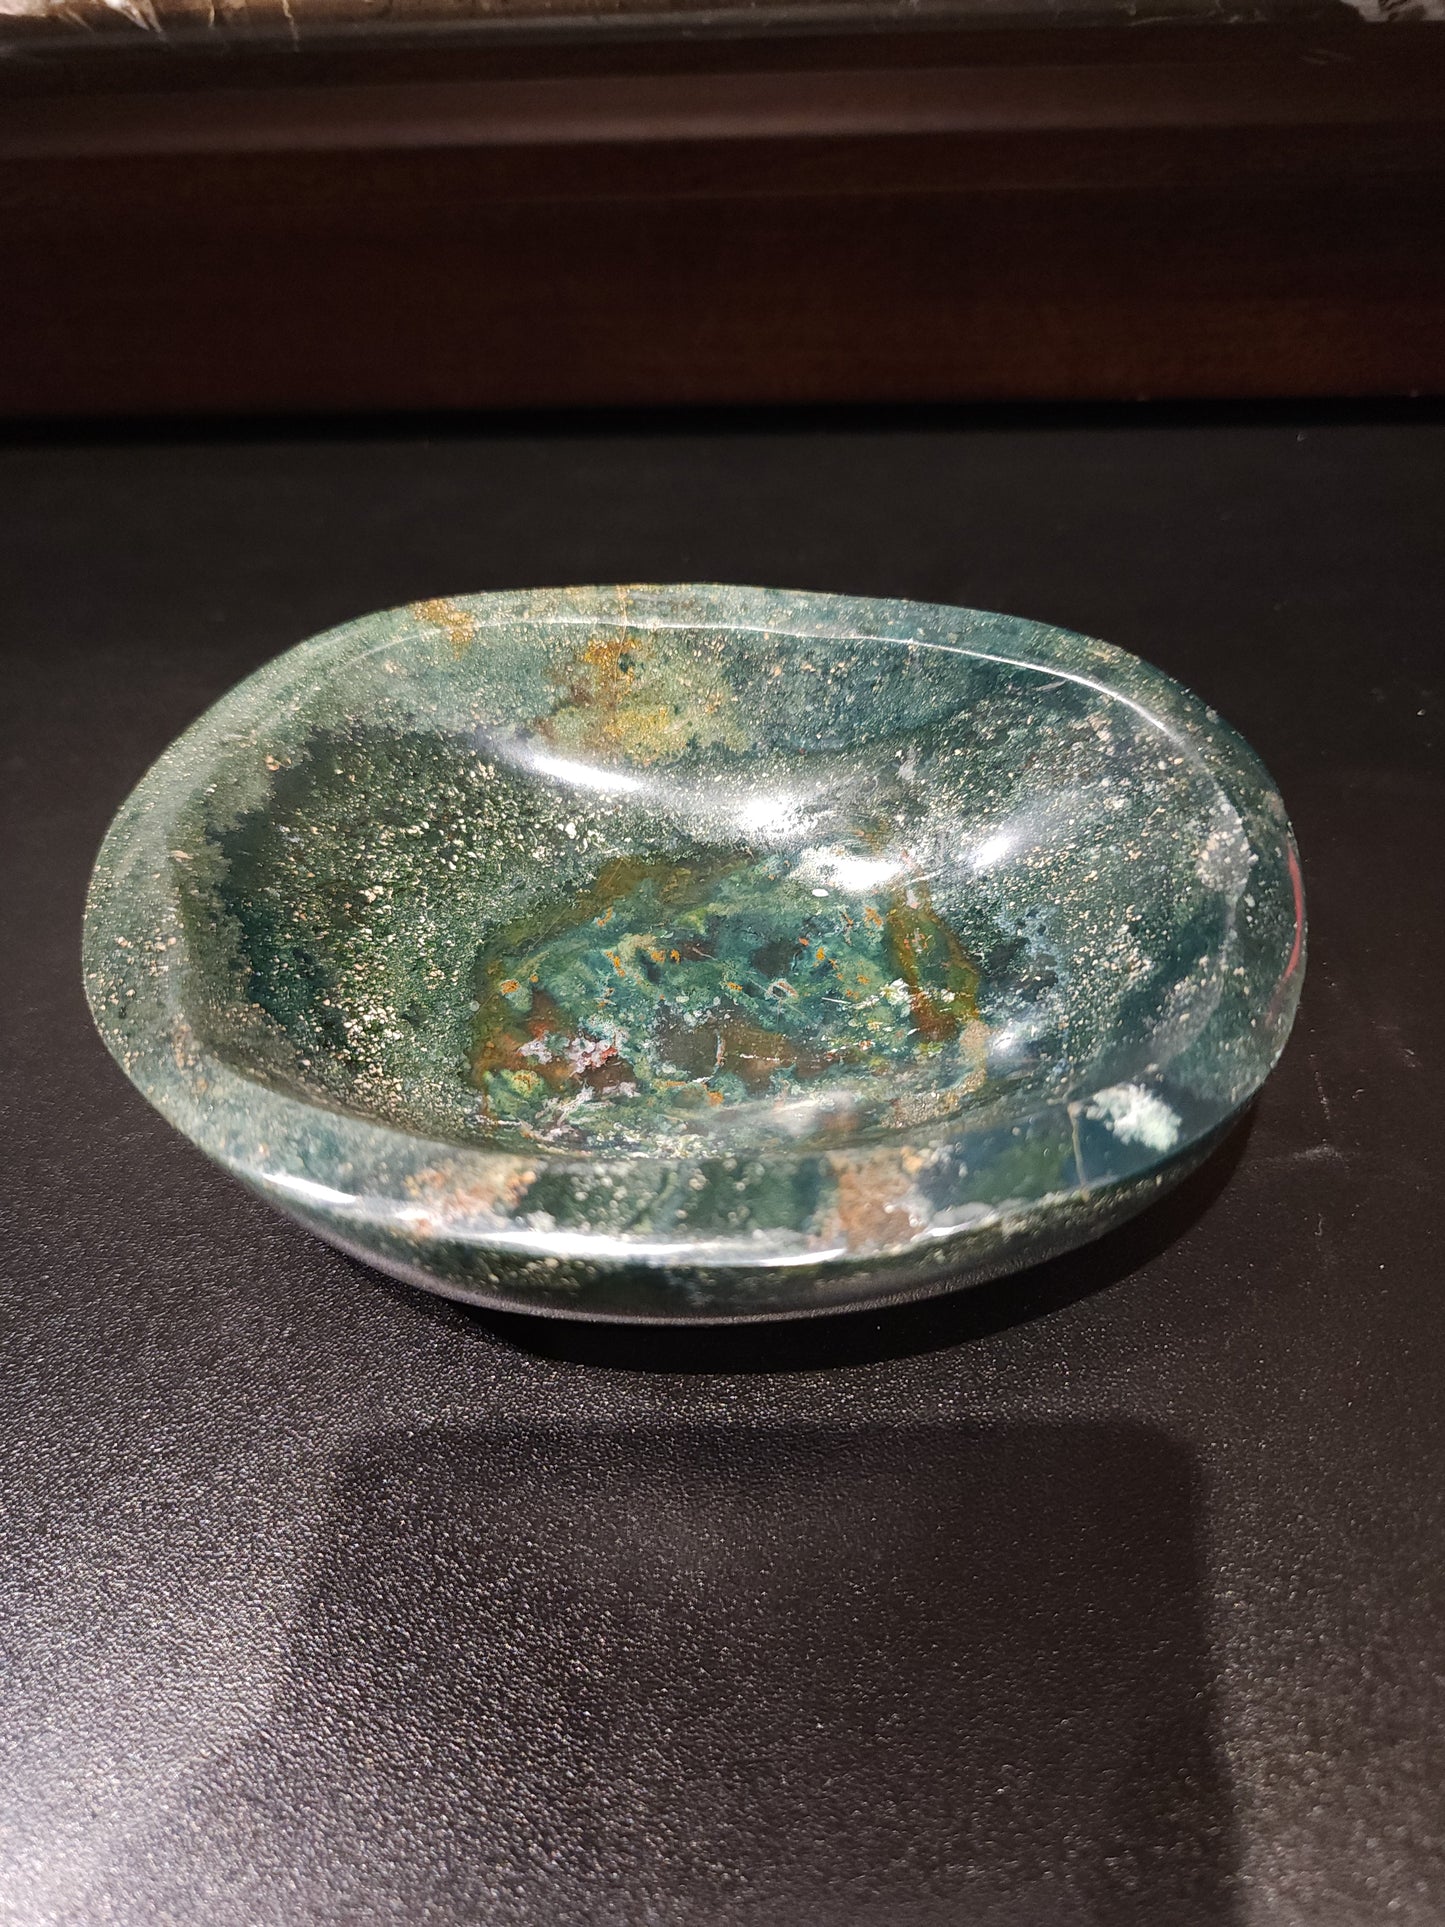 Ocean jasper bowl